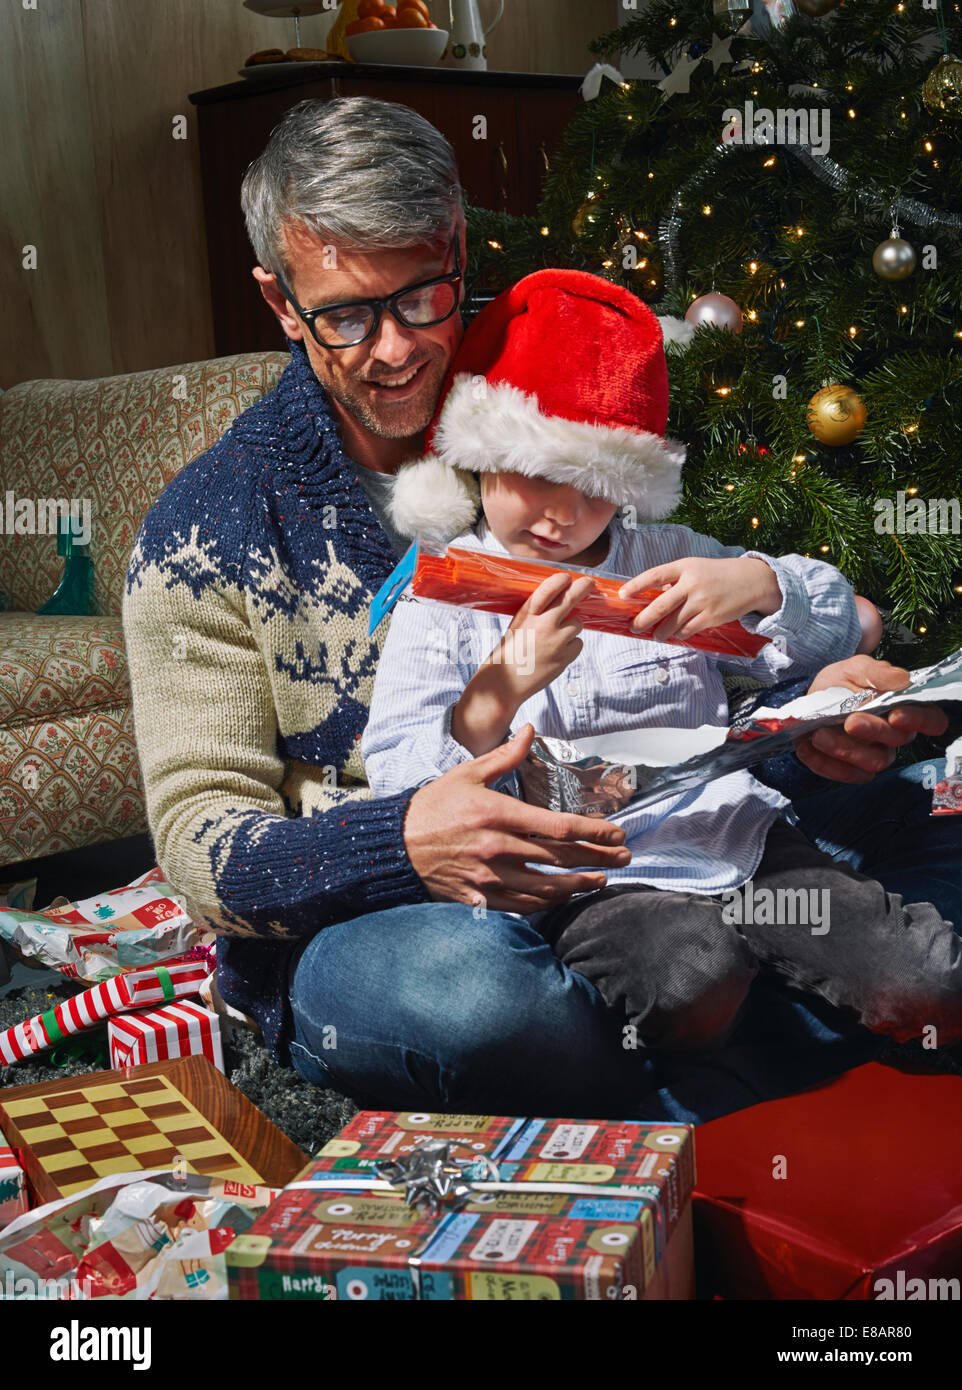 Padre en el suelo de la sala de estar abriendo regalos de navidad con hijo Foto de stock